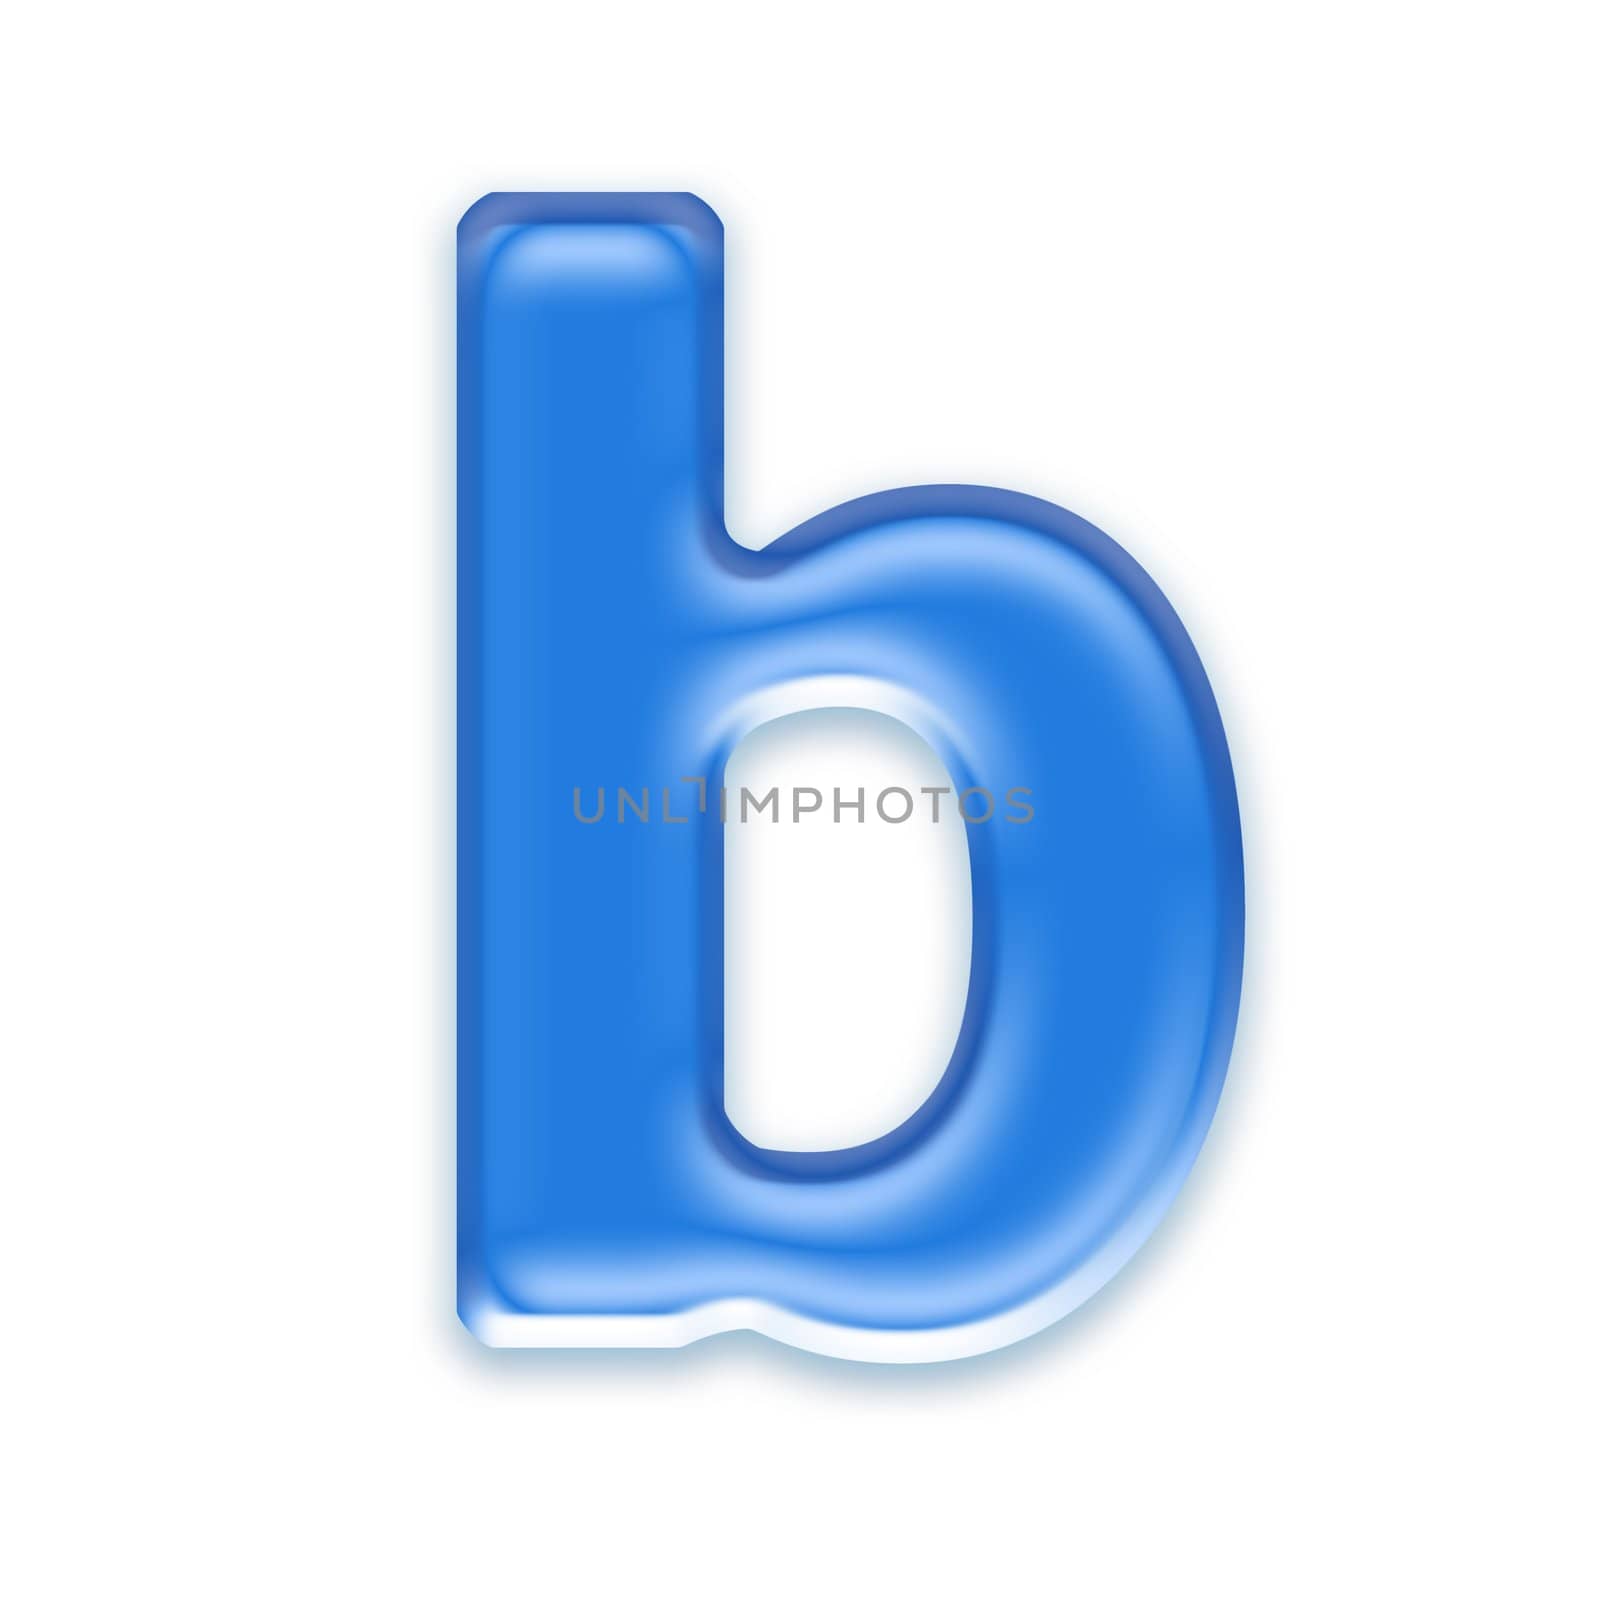 Aqua letter isolated on white background  - b